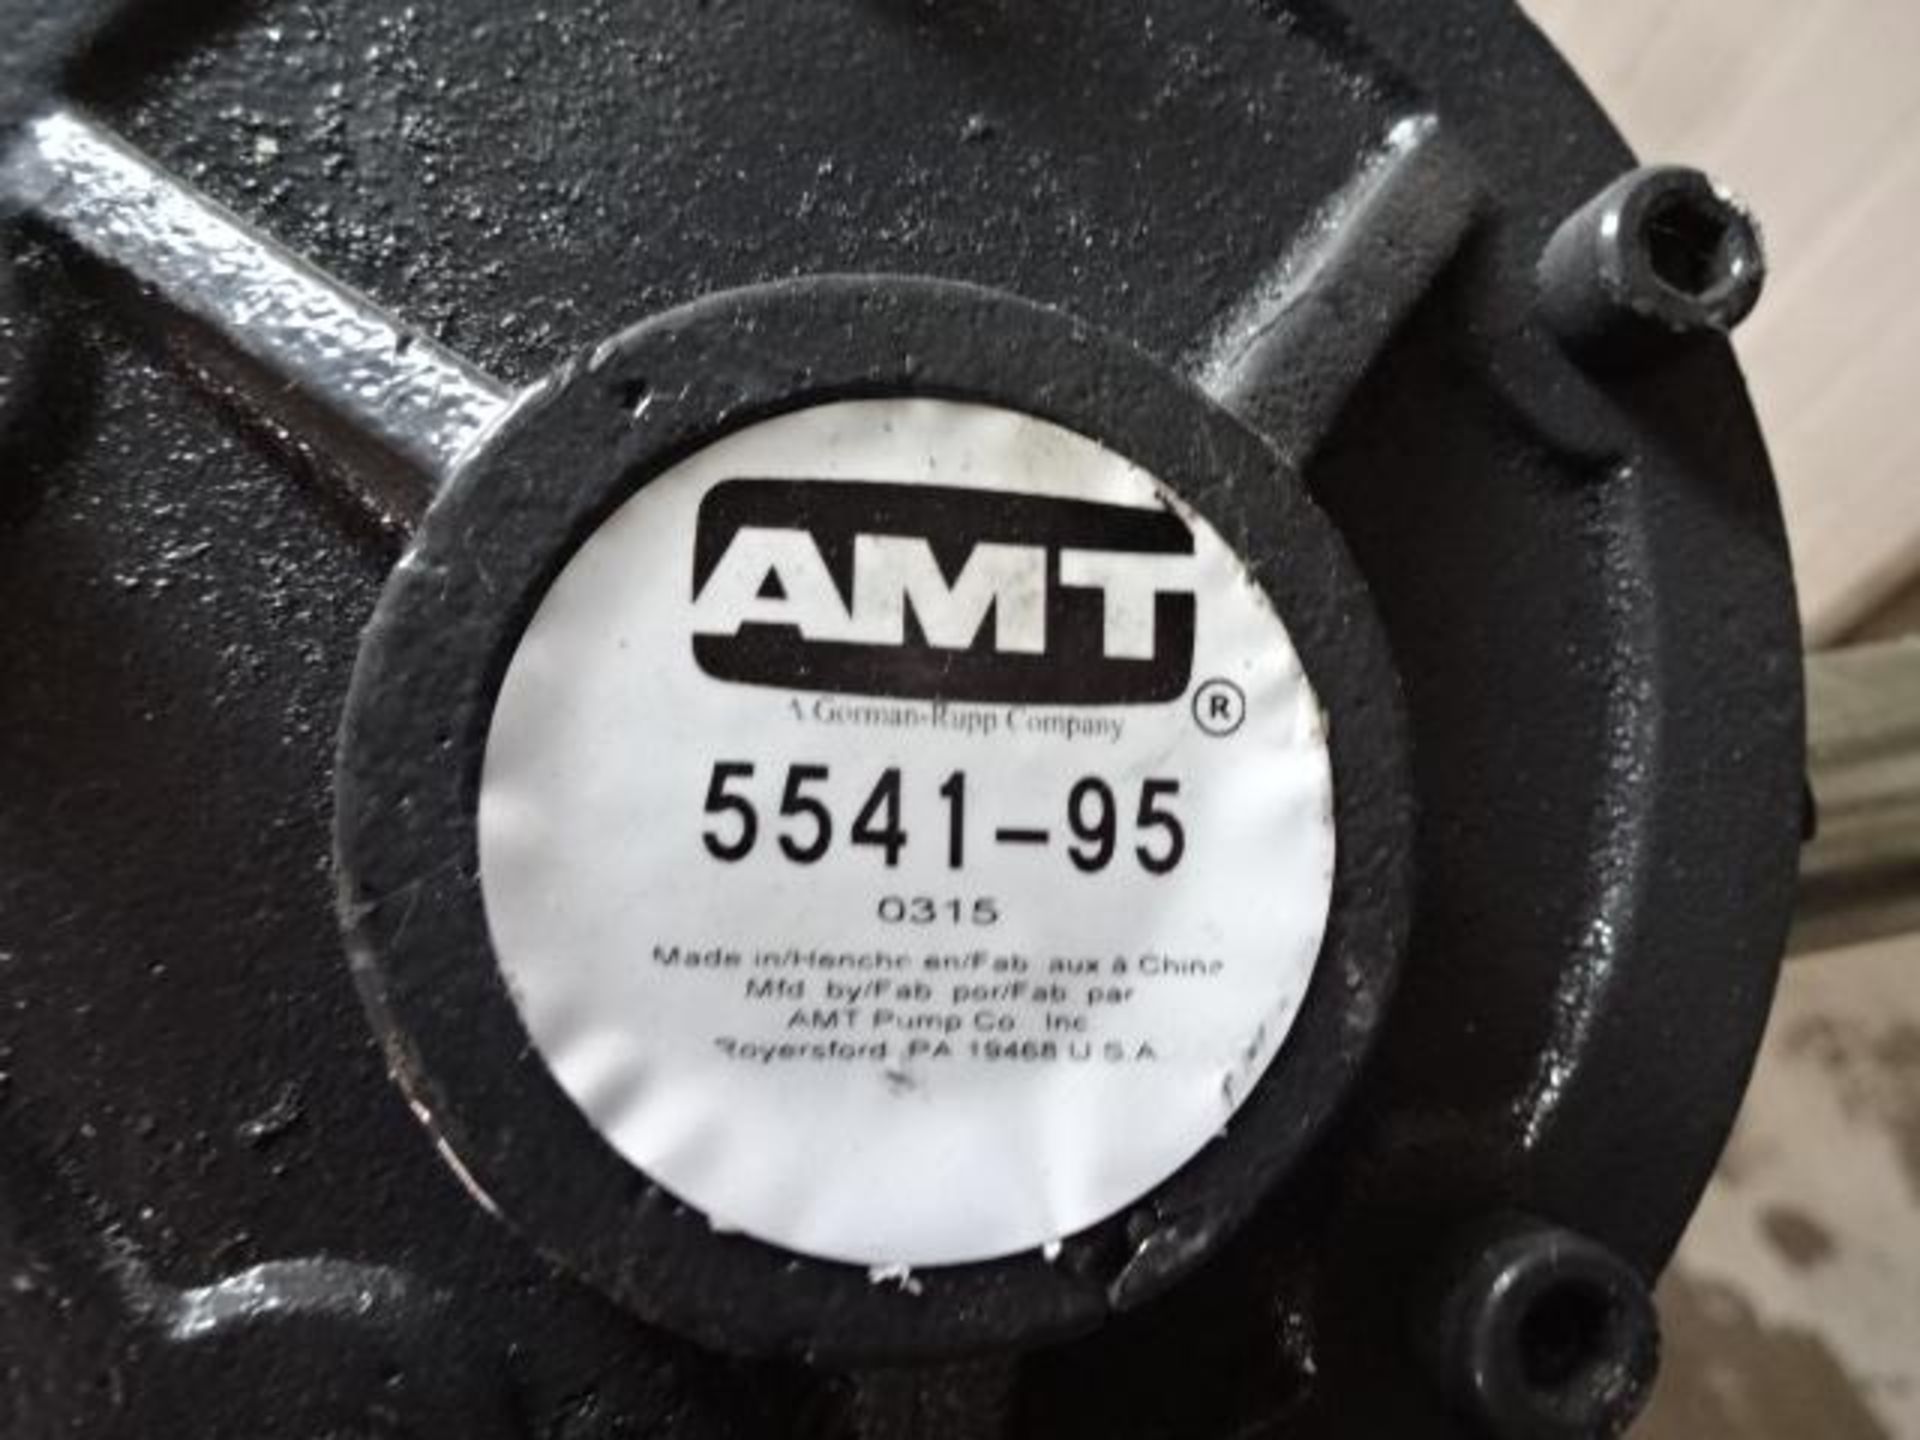 amt Pump 5541-95 - Pompe amt 5541-95 - Image 3 of 5